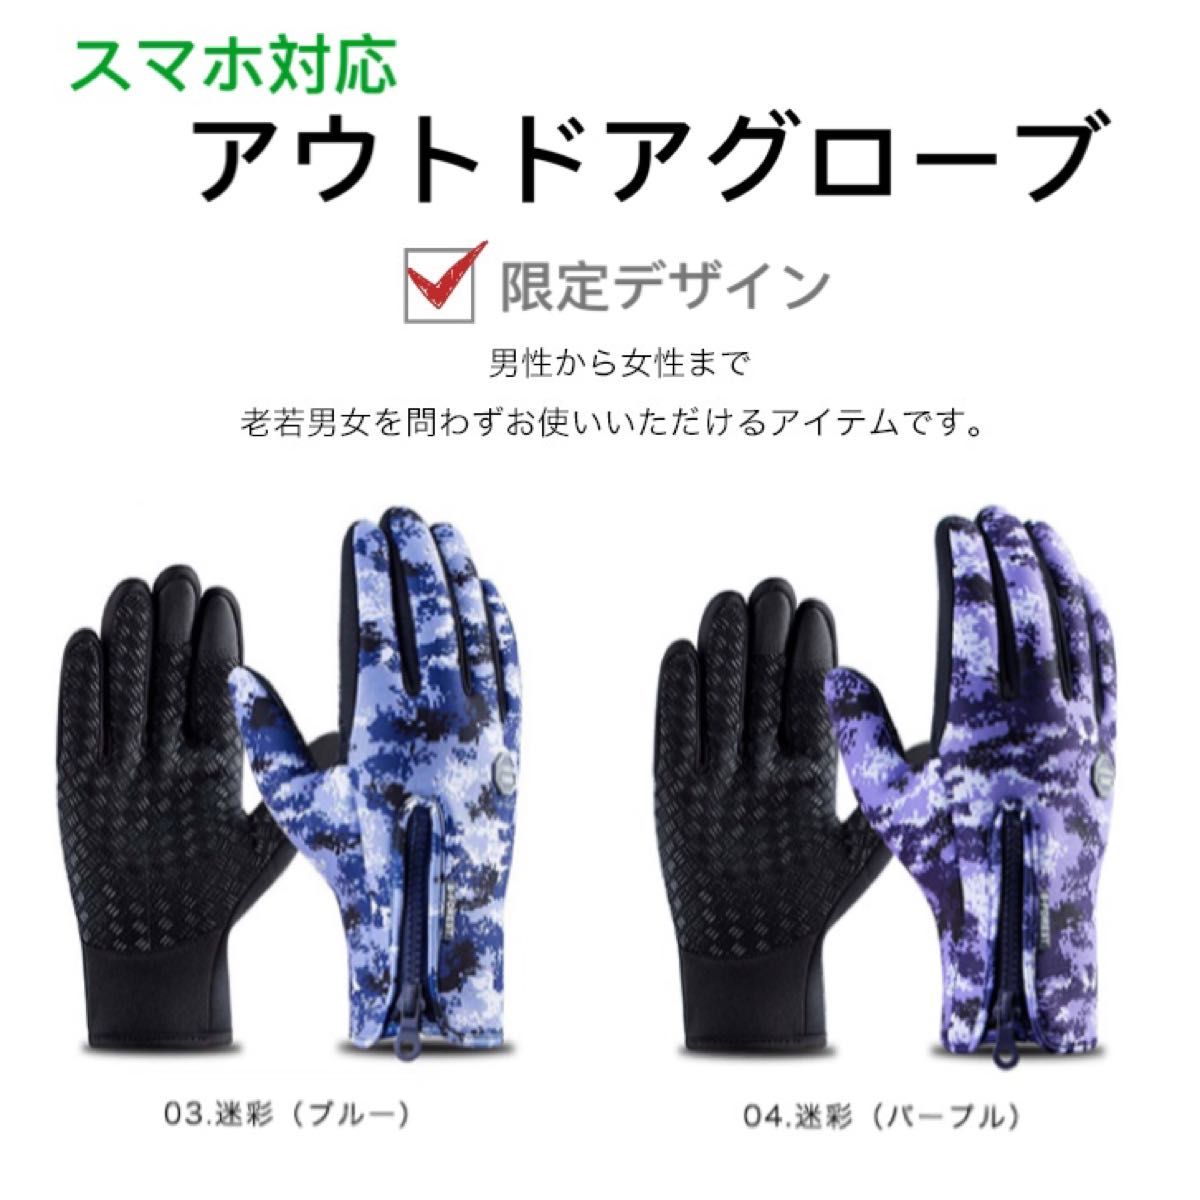 手袋 グローブ レディース メンズ アウトドア トレッキンググローブ スマホ対応 厚手手袋 スマホ対応手袋 アウトドアグローブ